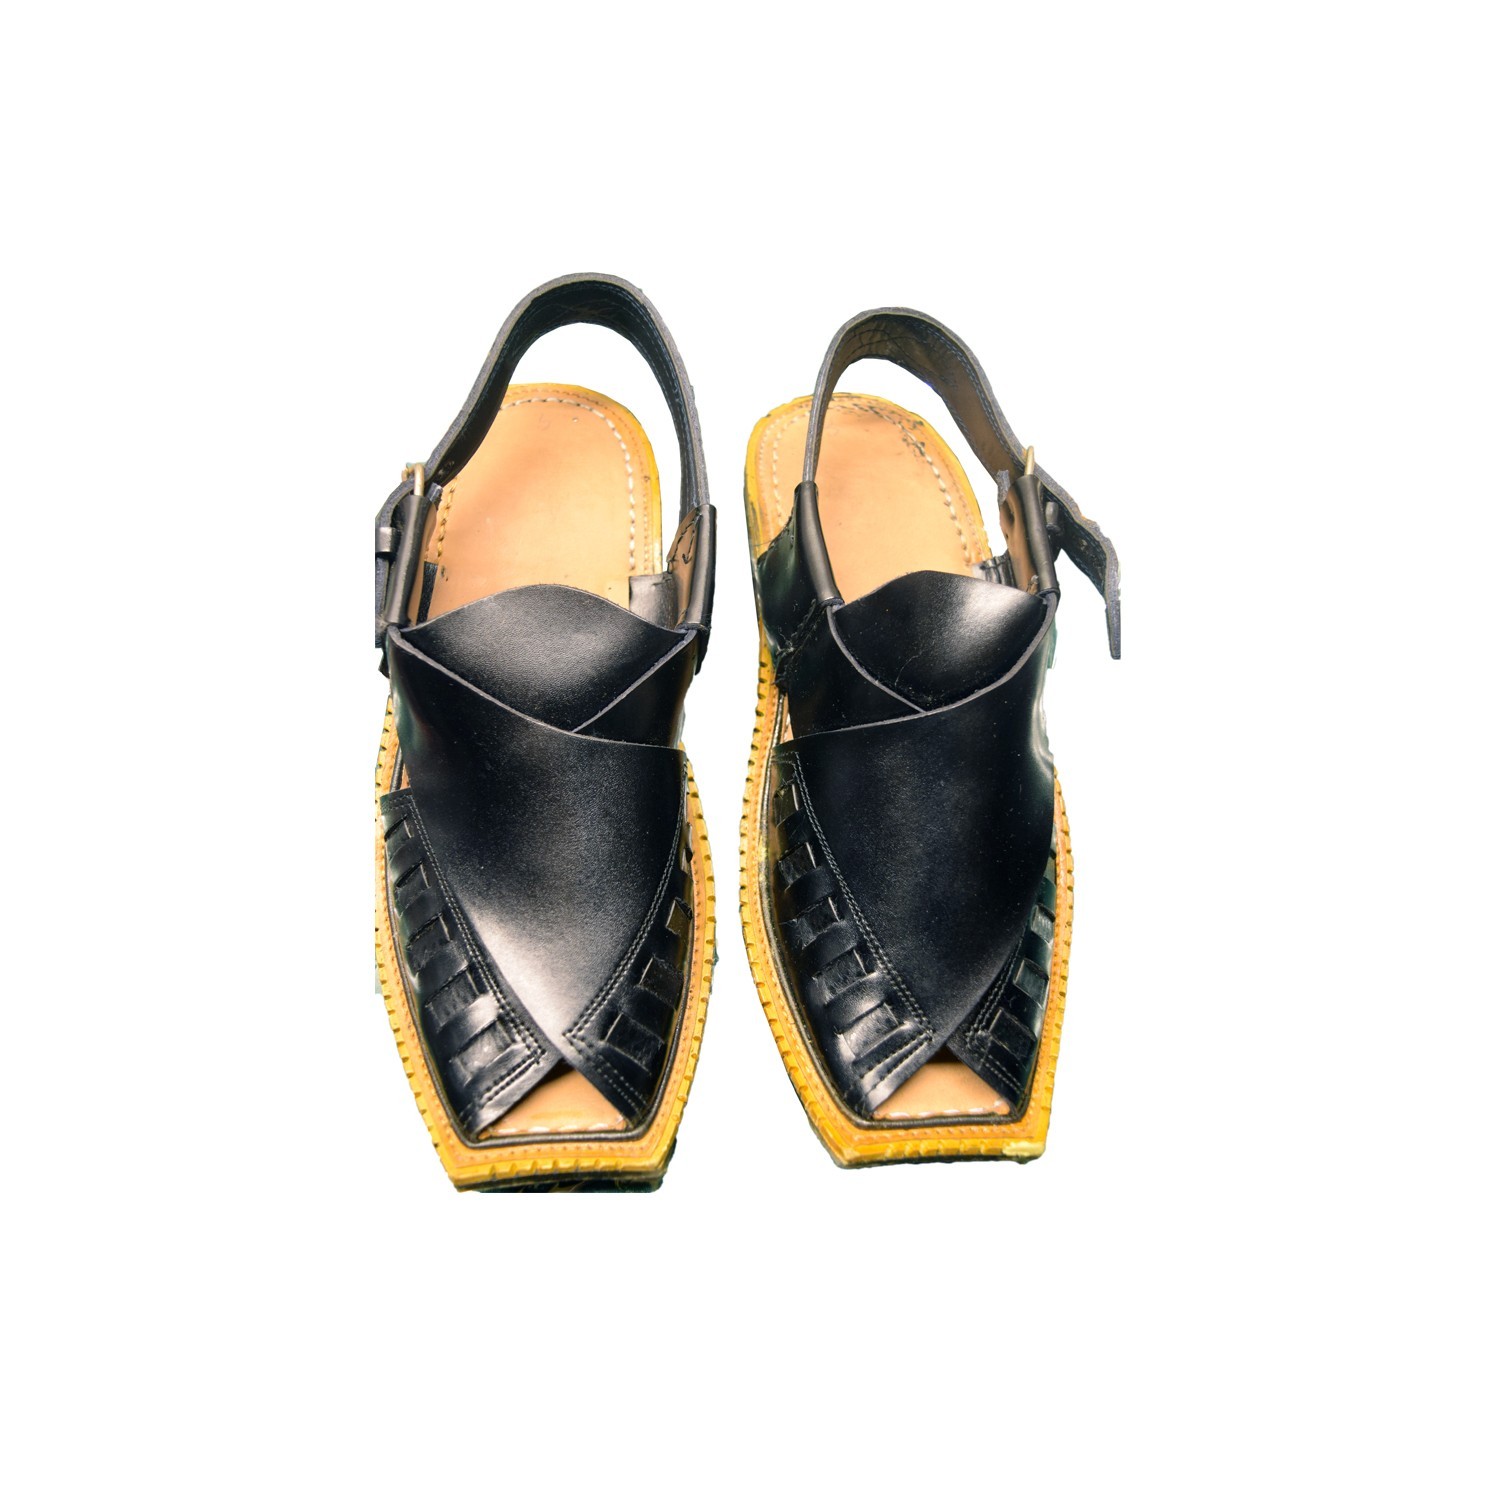 Men’s Black Khussa Shoes Punjabi Jutti Slipper – J1080 1